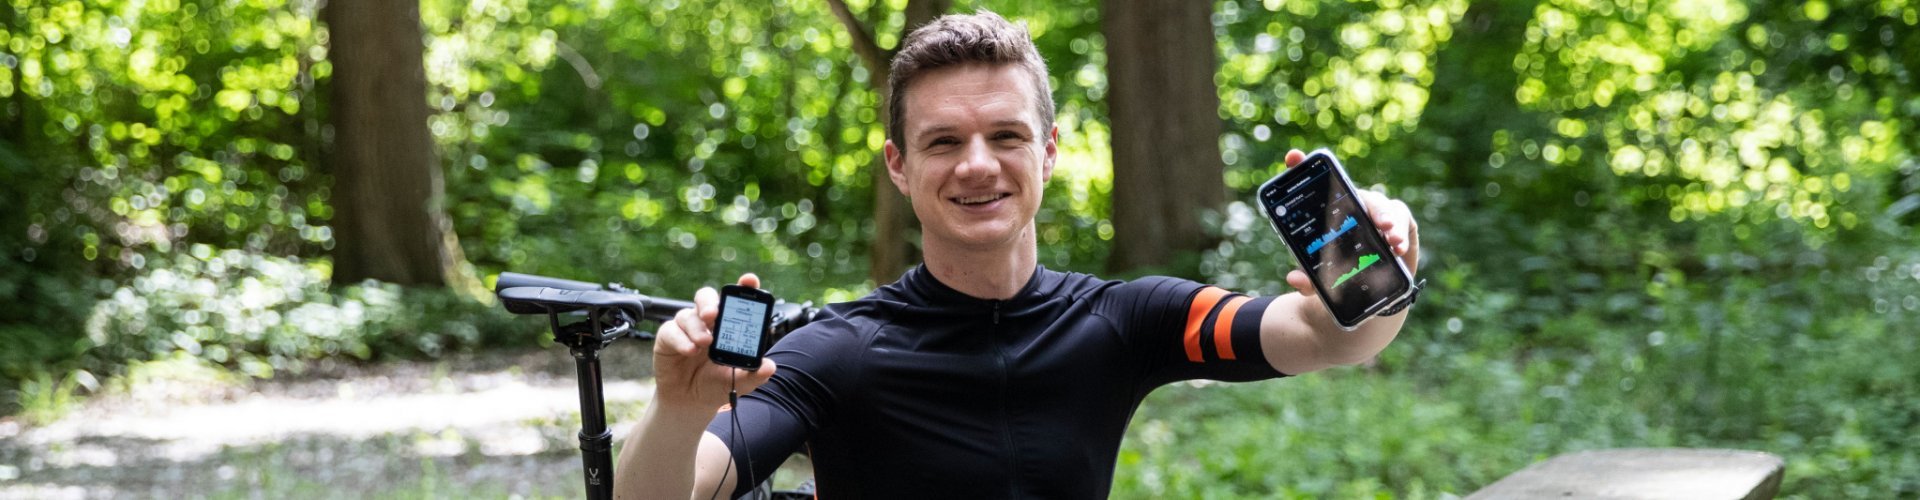 Christof, de gestión de productos de bc, sosteniendo frente a la cámara un ciclocomputador Garmin Edge y su smartphone, que muestra sus datos de rendimiento.